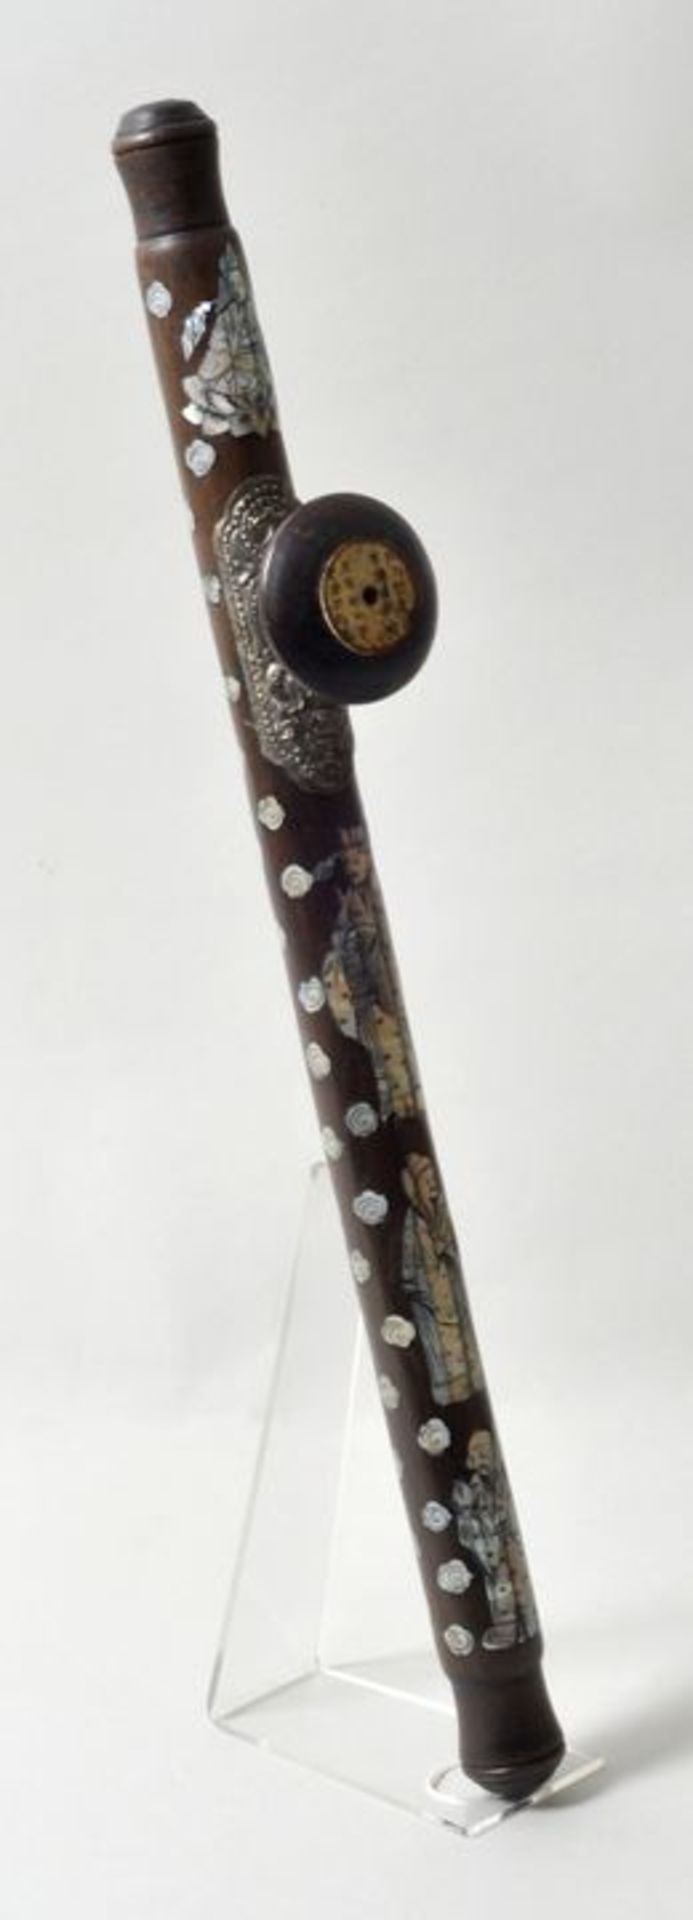 China. Opiumpfeife.Holz, Perlmutt, Silber. Aufwendig gestaltete Opiumpfeife mit figürlichen und